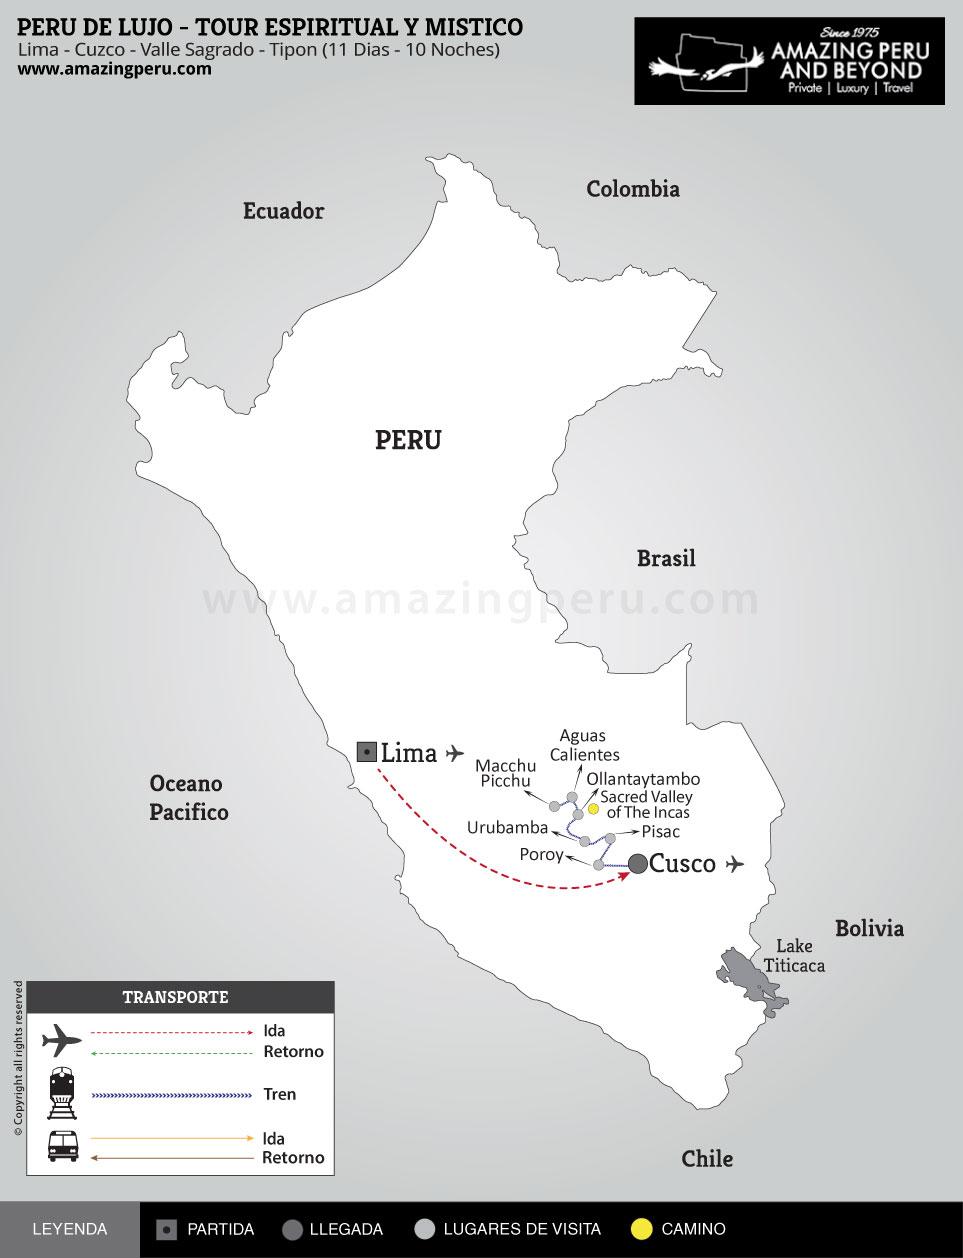 Peru de Lujo - Tour Espiritual y Mstico